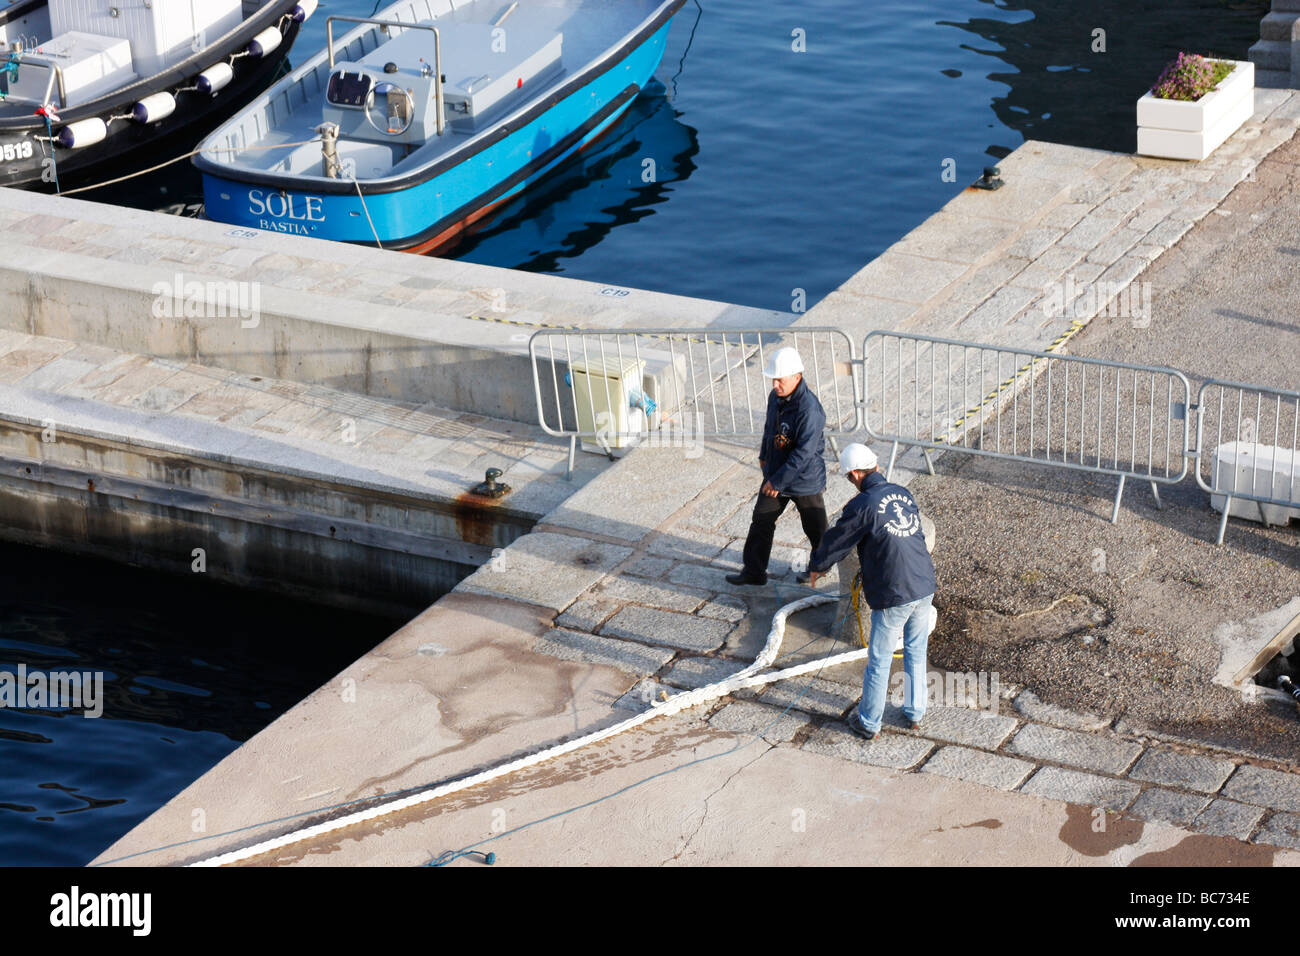 Les quais de faire trop rapidement les amarres d'un bateau de croisière au port de Calvi,Corse,France Banque D'Images